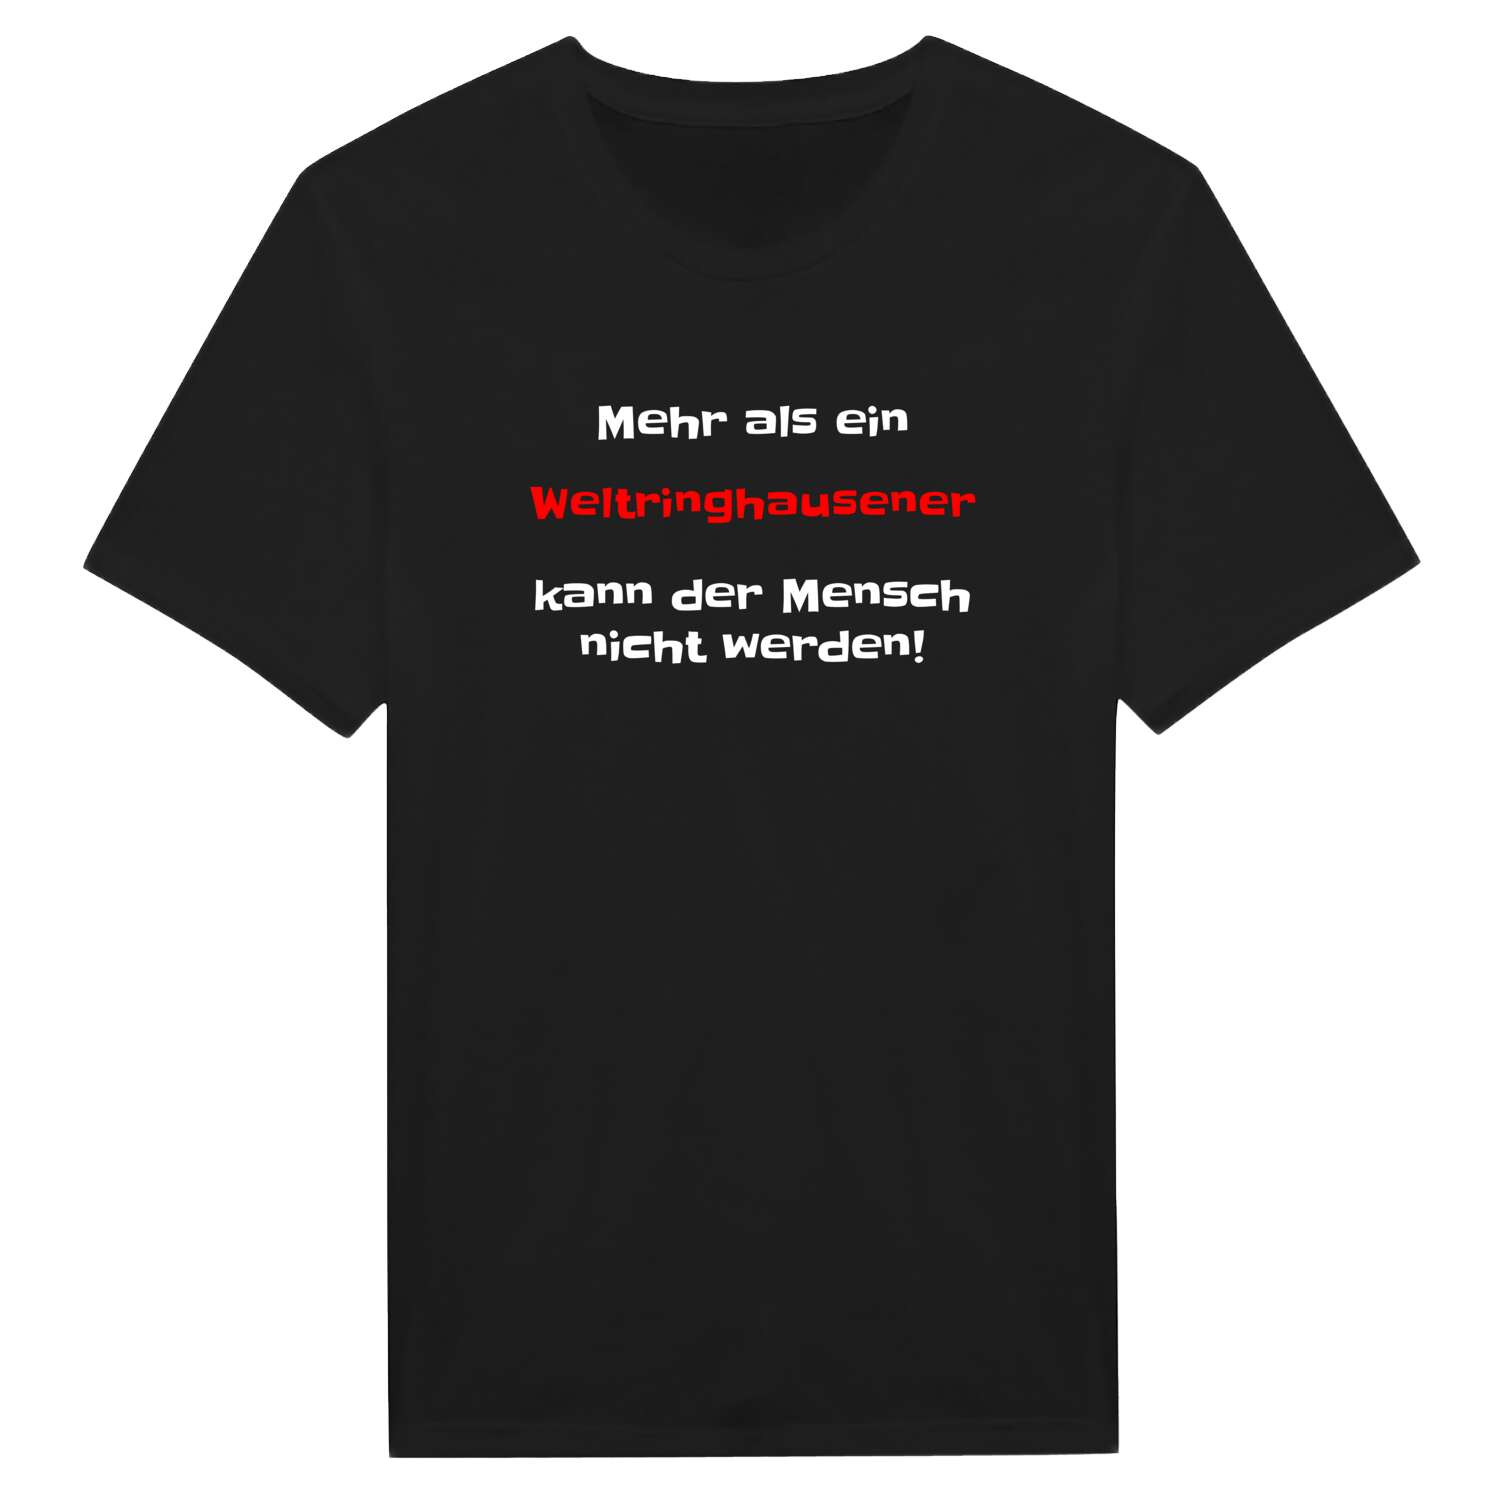 Weltringhausen T-Shirt »Mehr als ein«